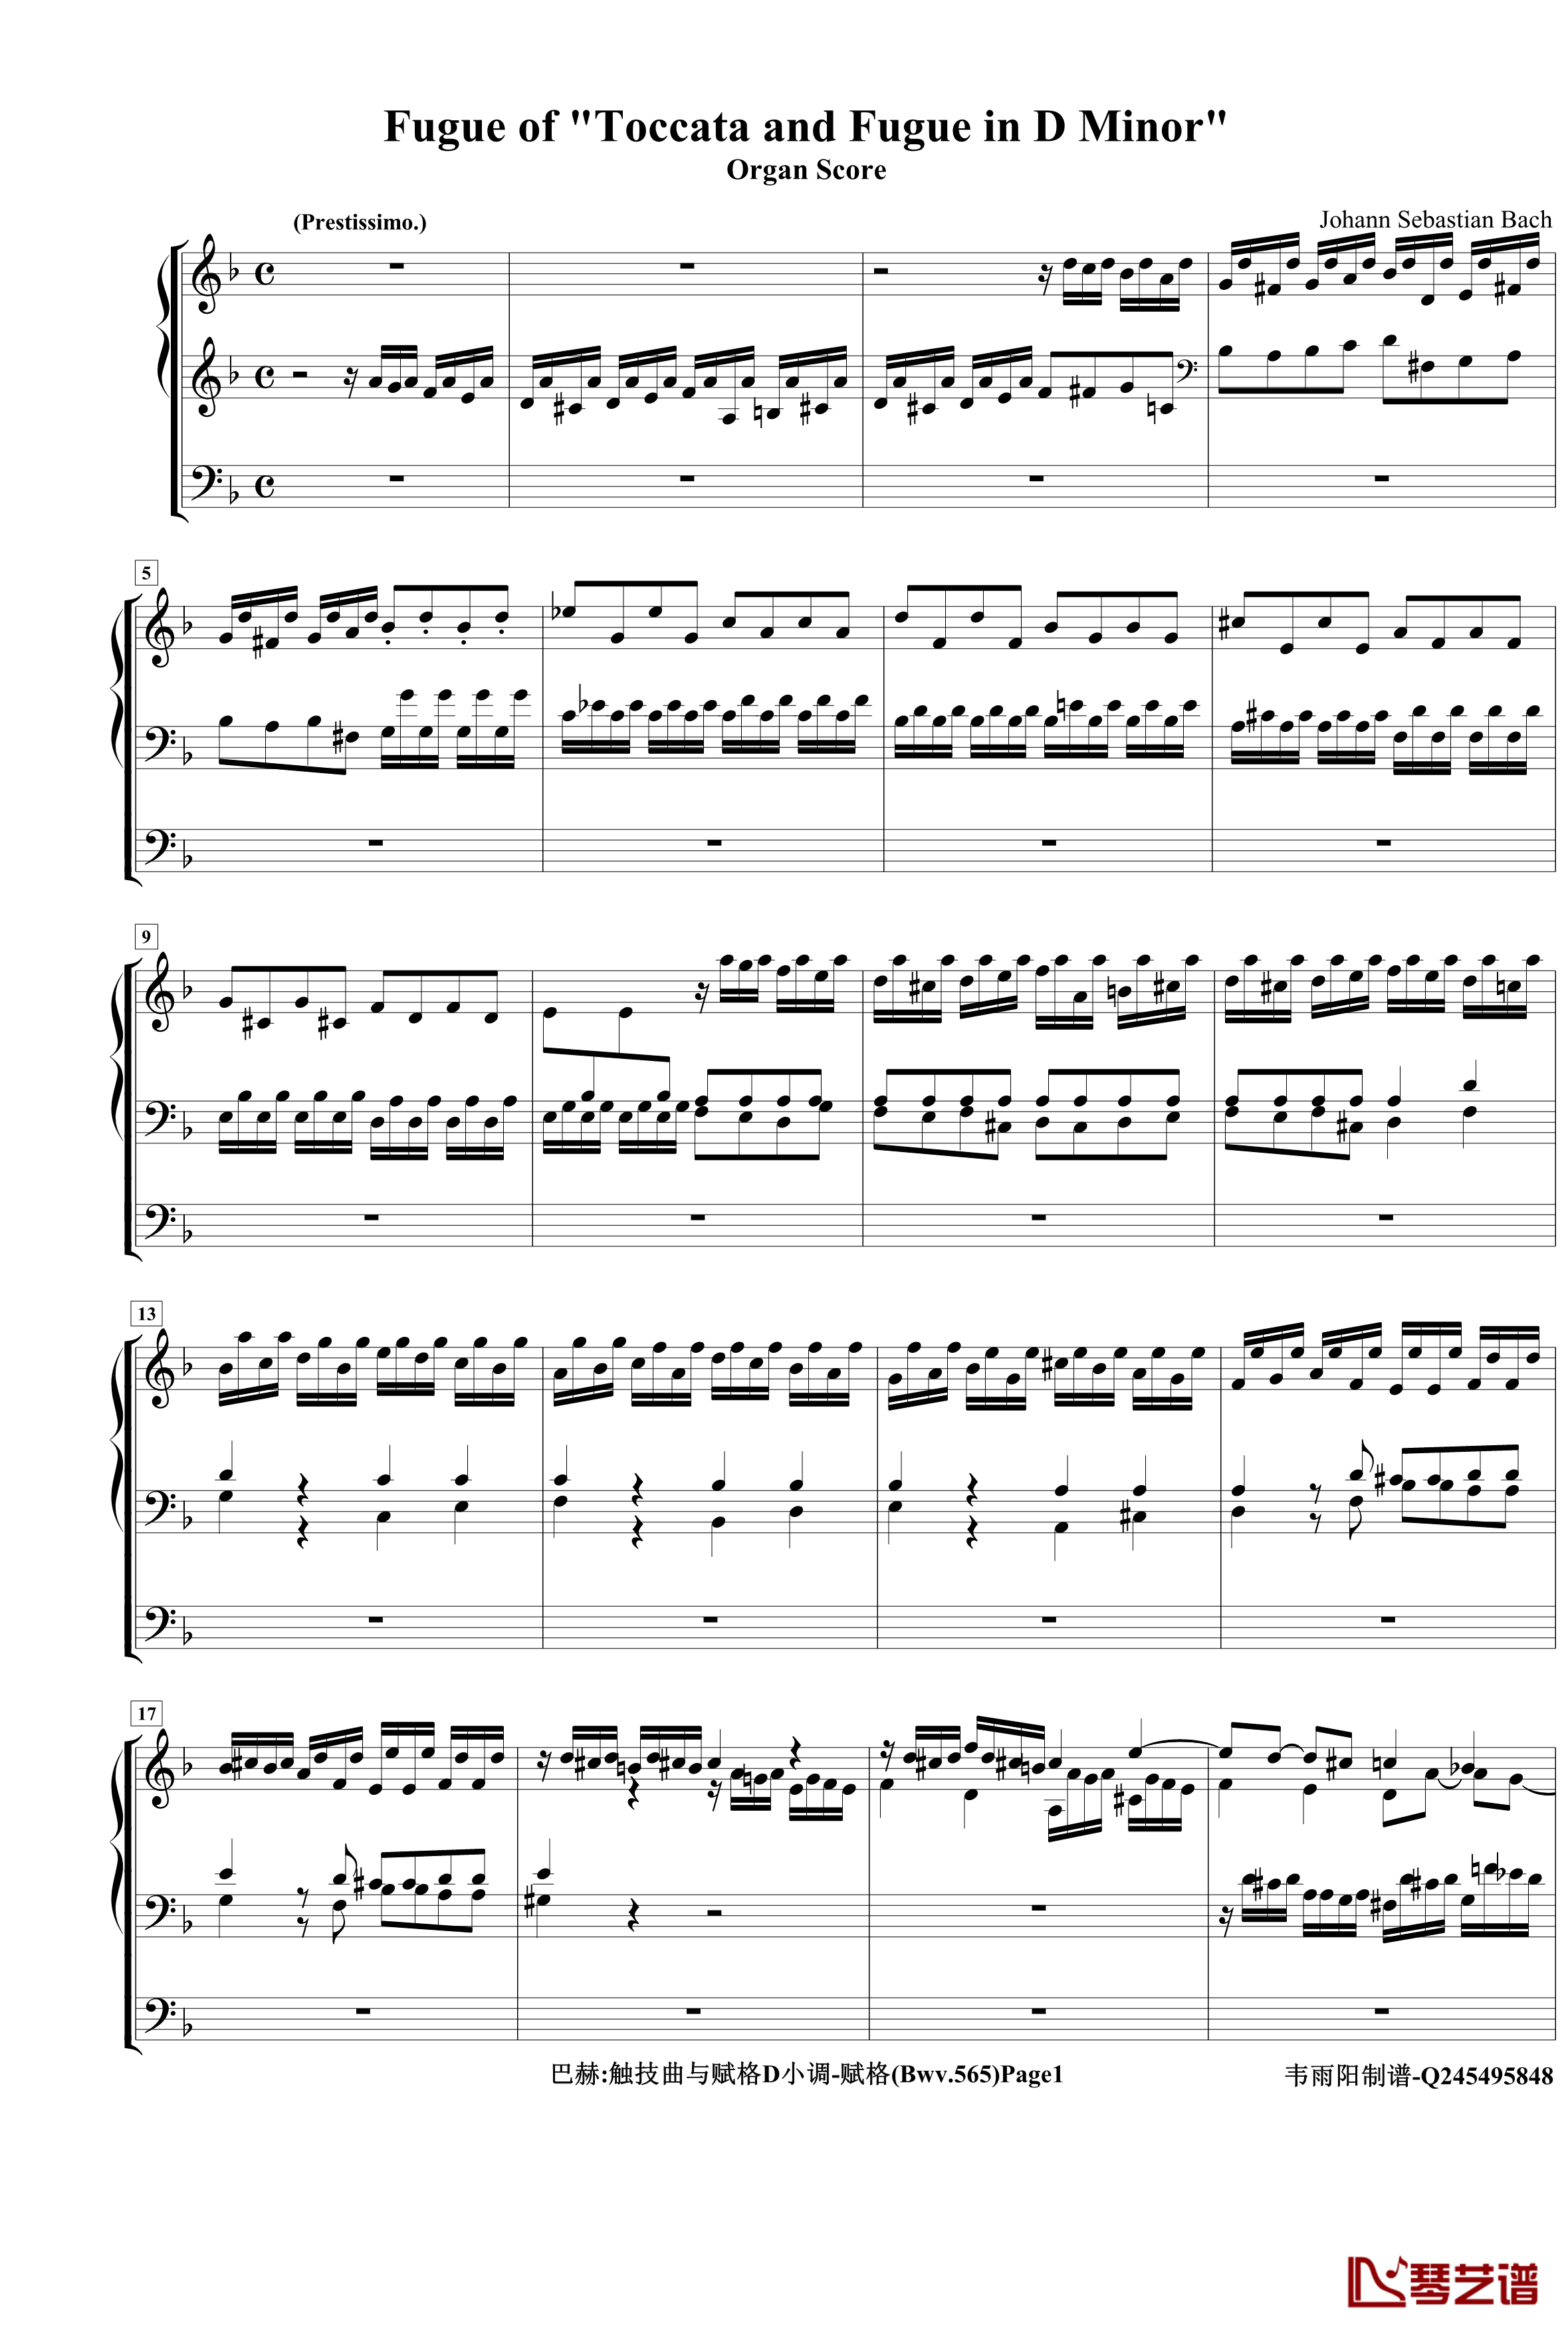 托卡塔与赋格钢琴谱-管风琴-巴哈-Bach, Johann Sebastian1